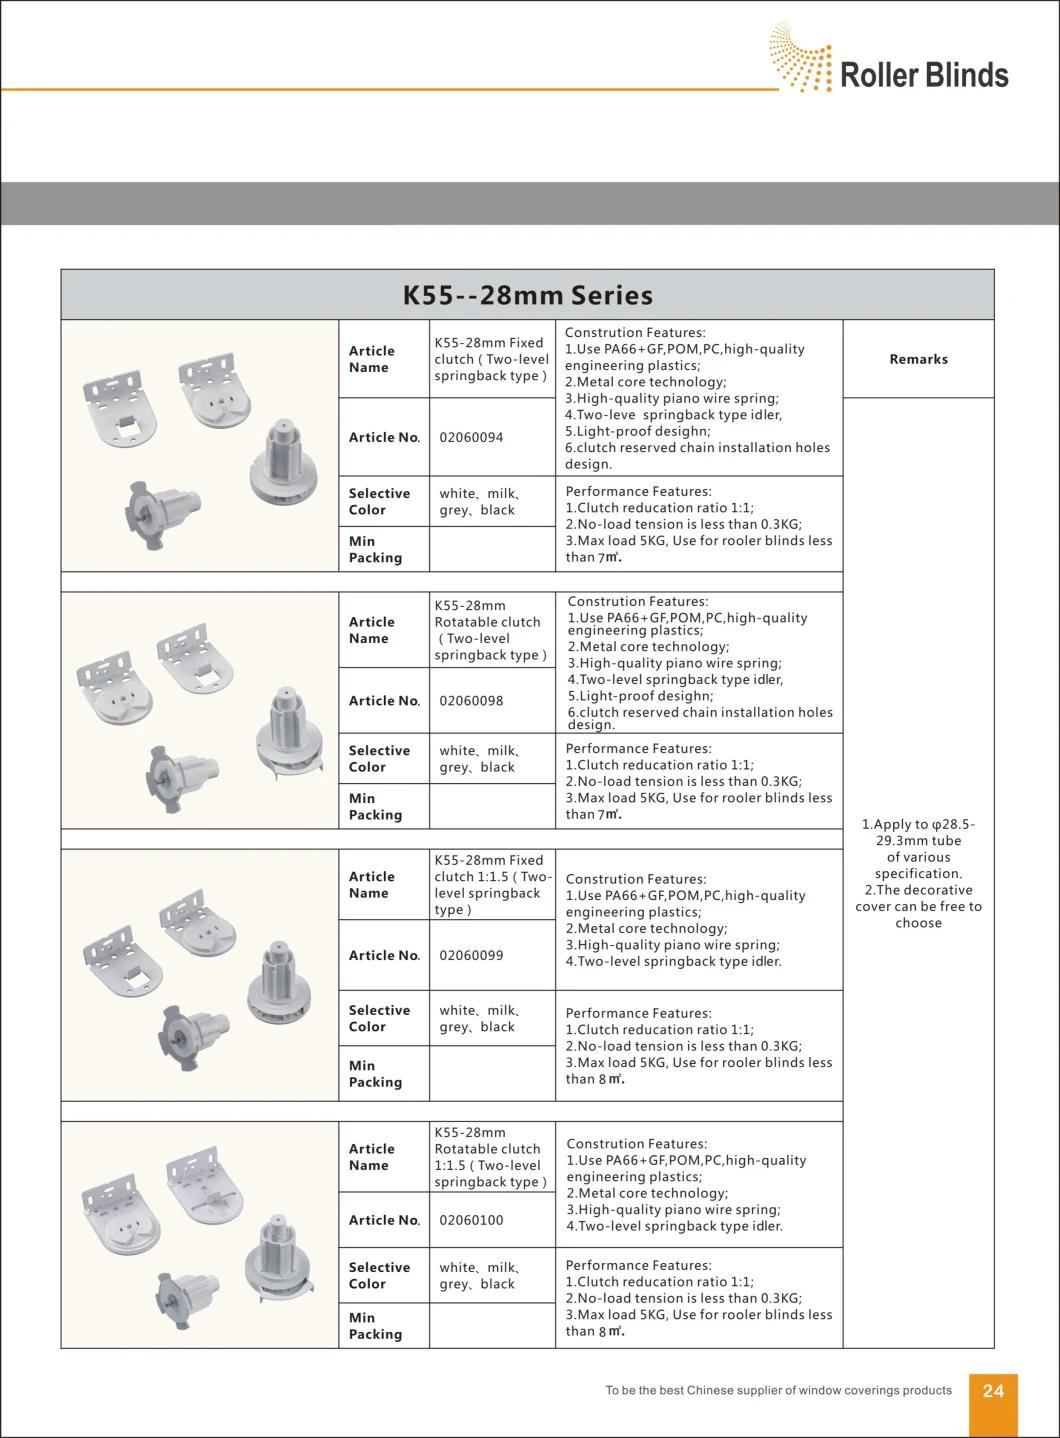 K55-28mm Fixed Deceleration Clutch Roller Blinds Components, Roller Blinds